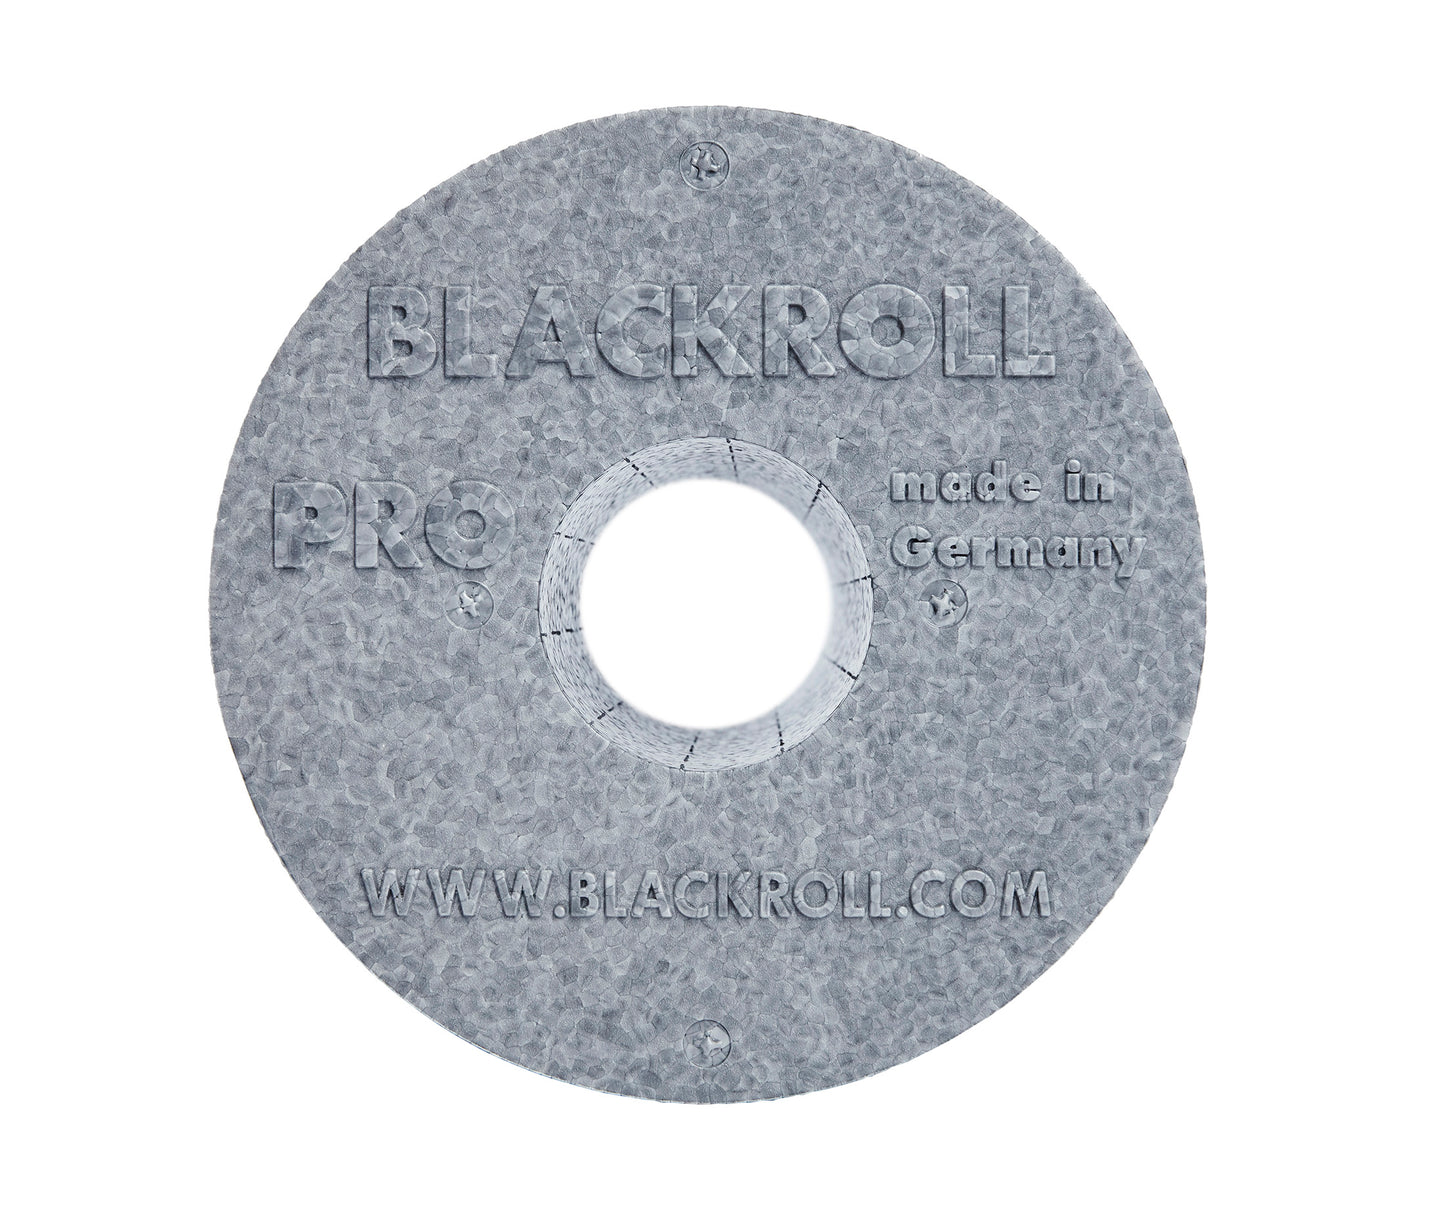 BLACKROLL® PRO FOAM ROLLER - Blackroll Singapore